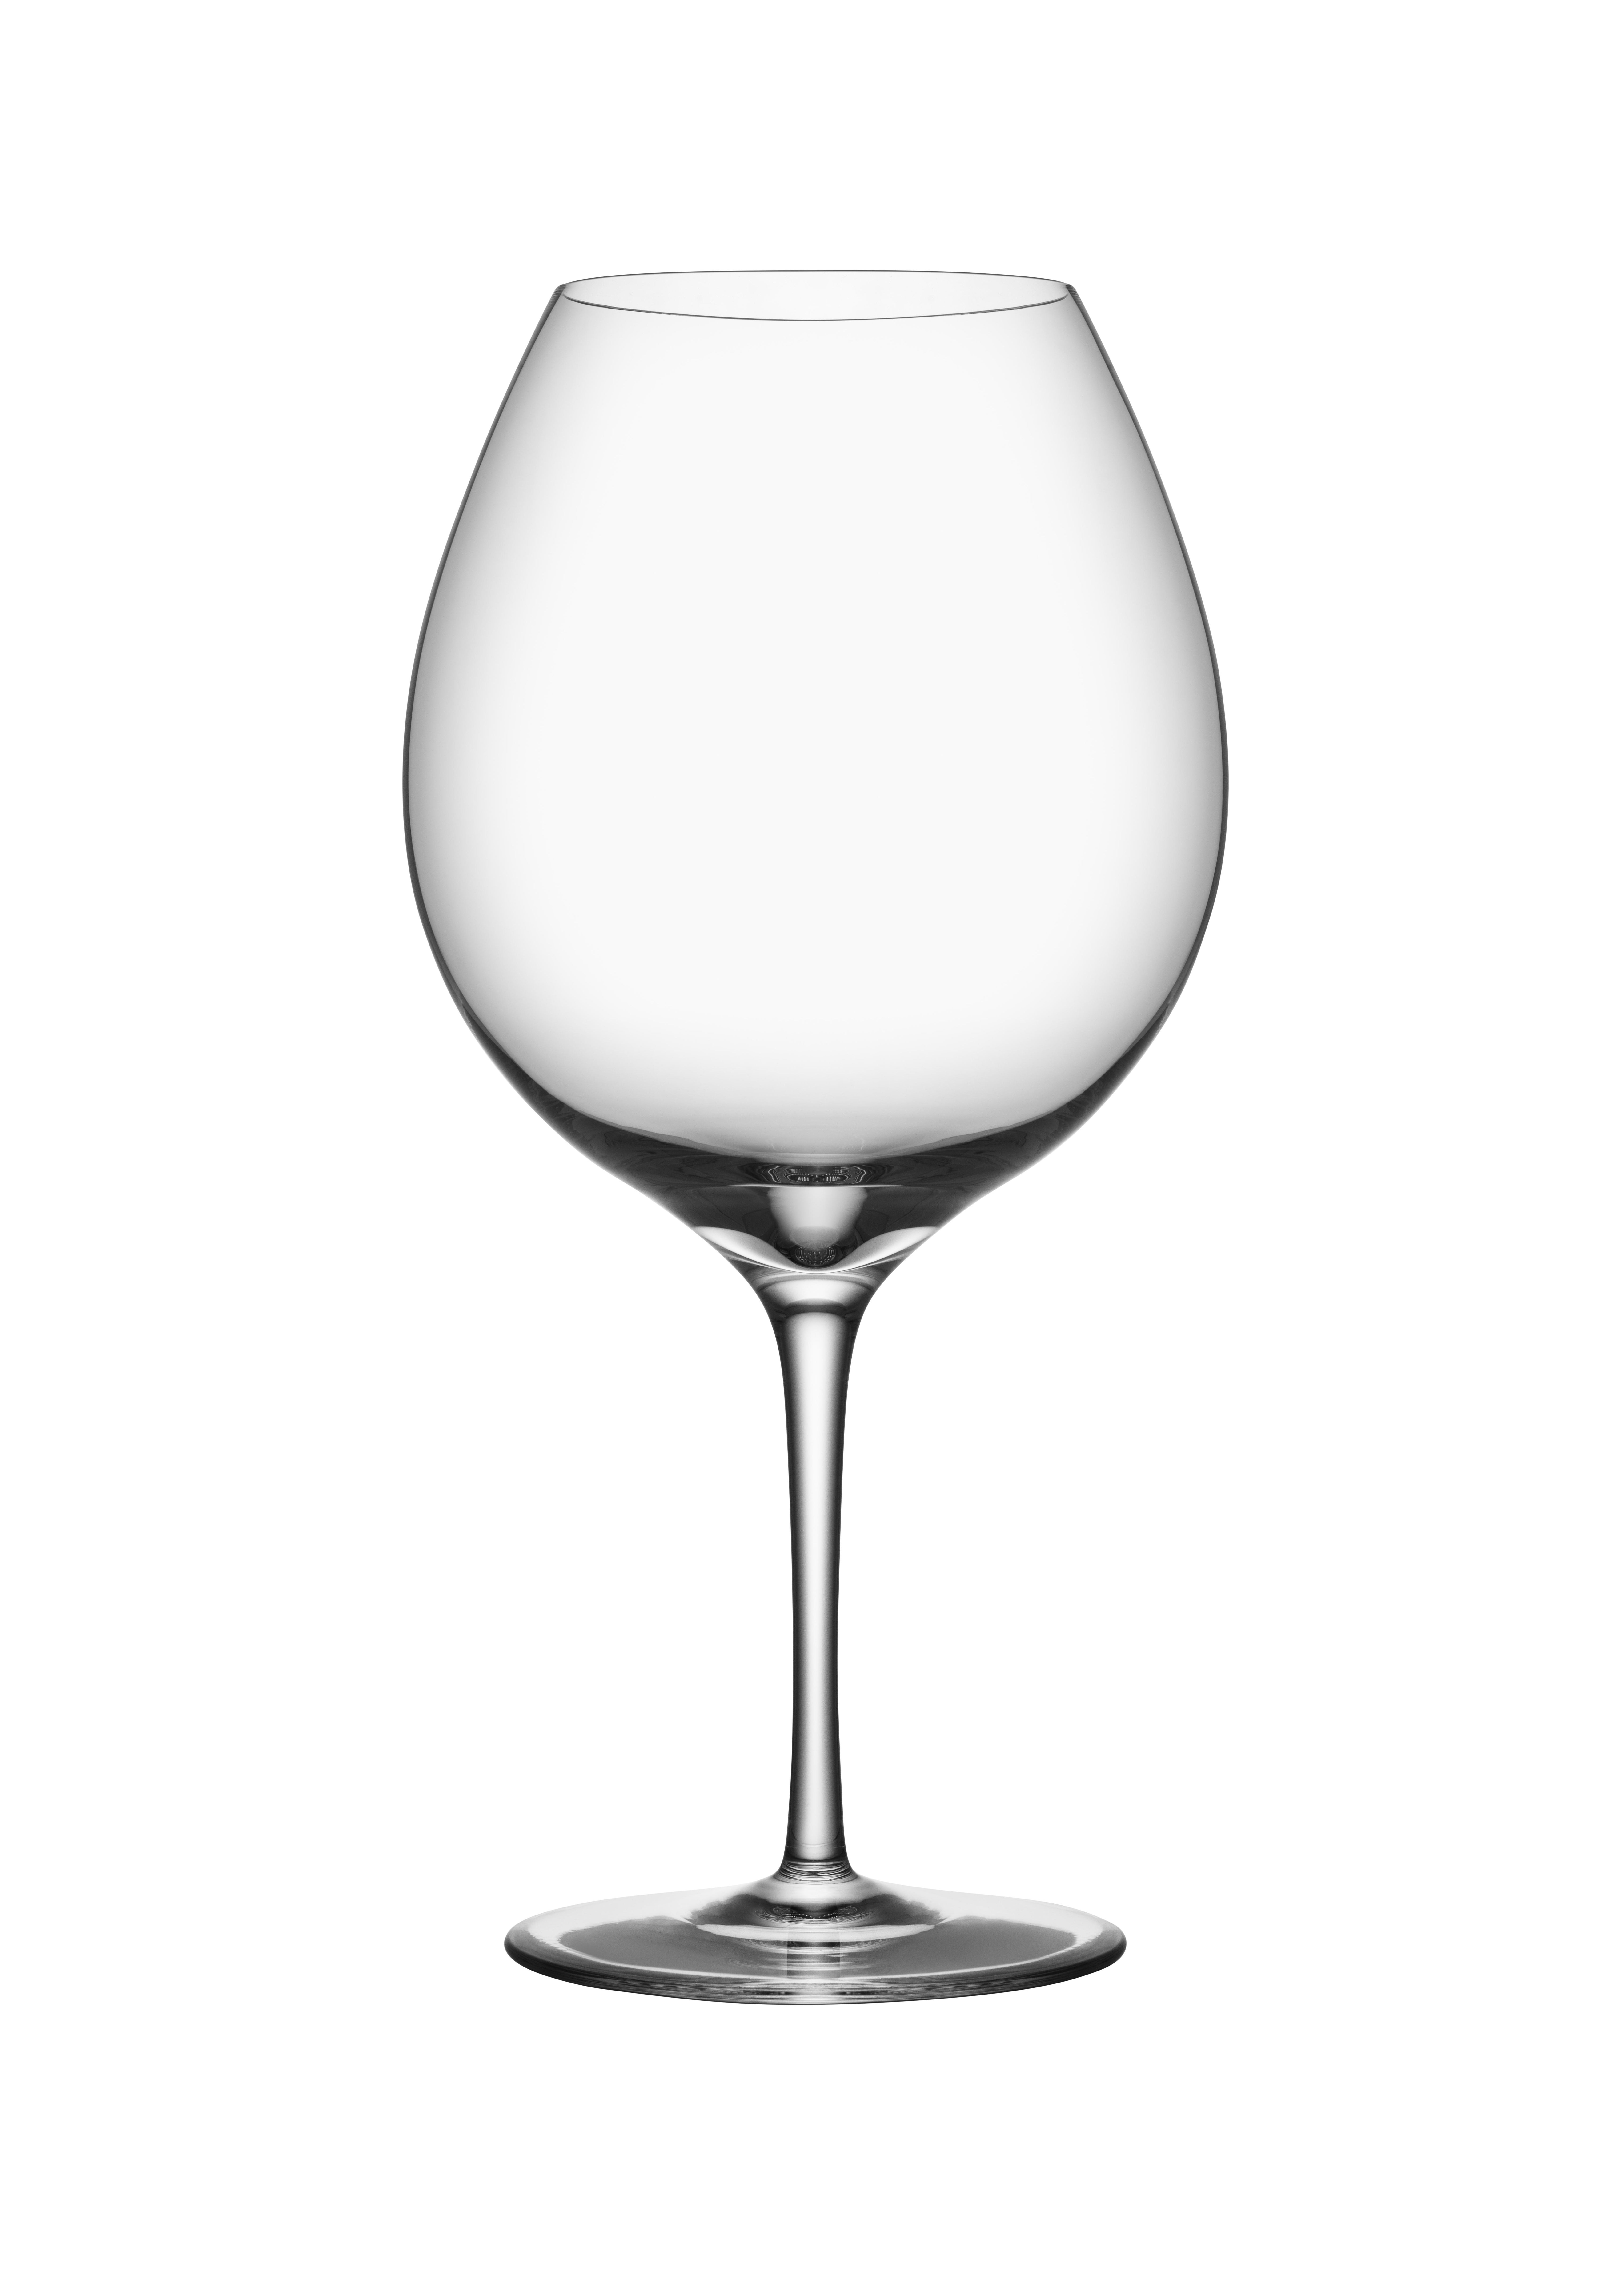 Der Premier Pinot Noir von Orrefors mit einem Fassungsvermögen von 29 oz wurde entwickelt, um den Geschmack und die Aromen von Rebsortenweinen, insbesondere von Pinot Noir, hervorzuheben. Das mundgeblasene Weinglas mit handgefertigtem Stiel ist eine